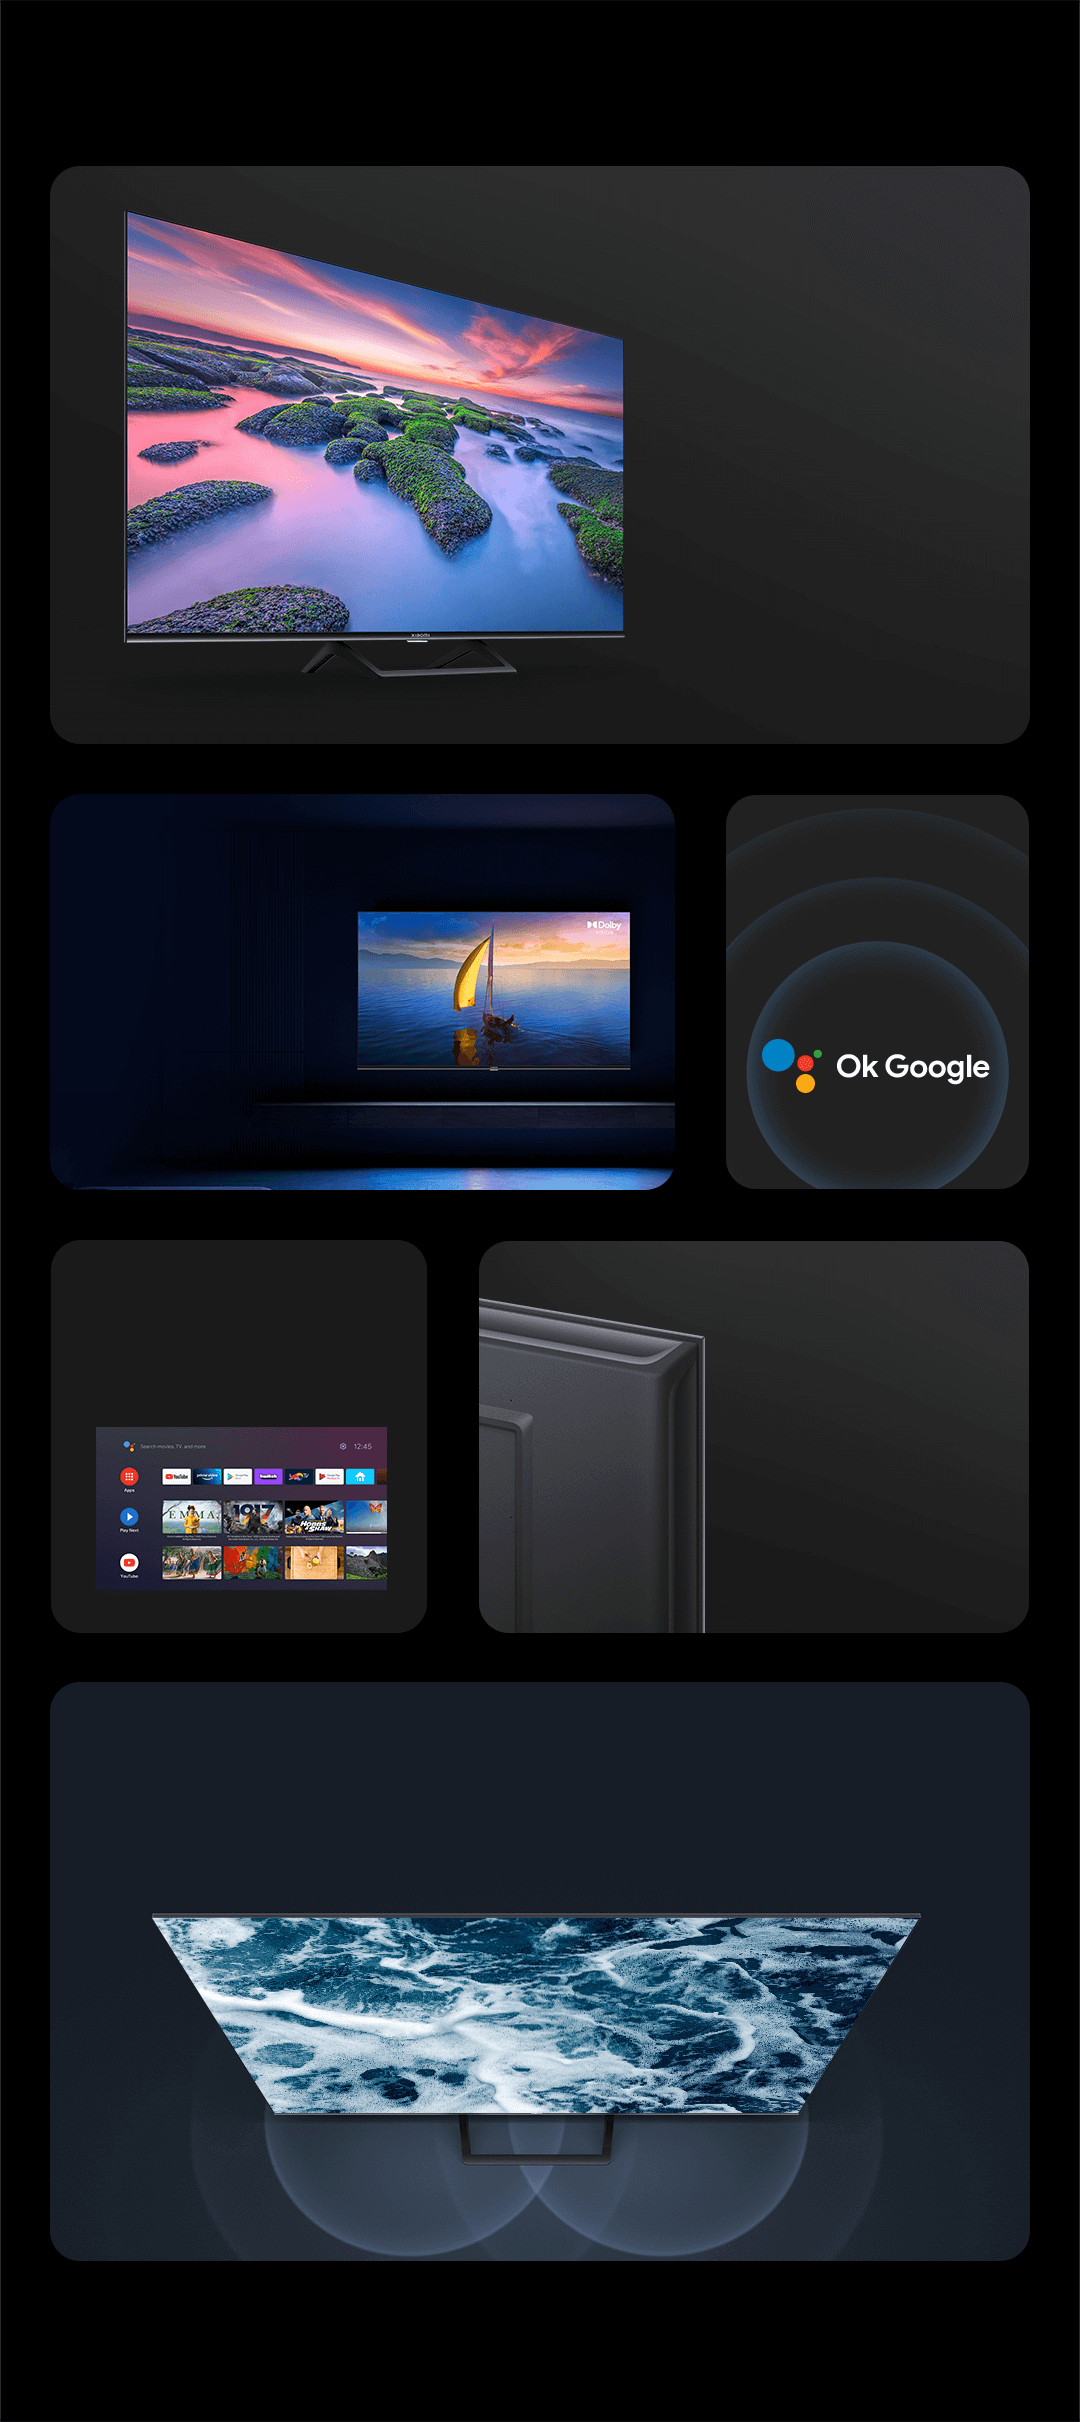 Xiaomi TV A2 32 LED HD by XIAOMI 